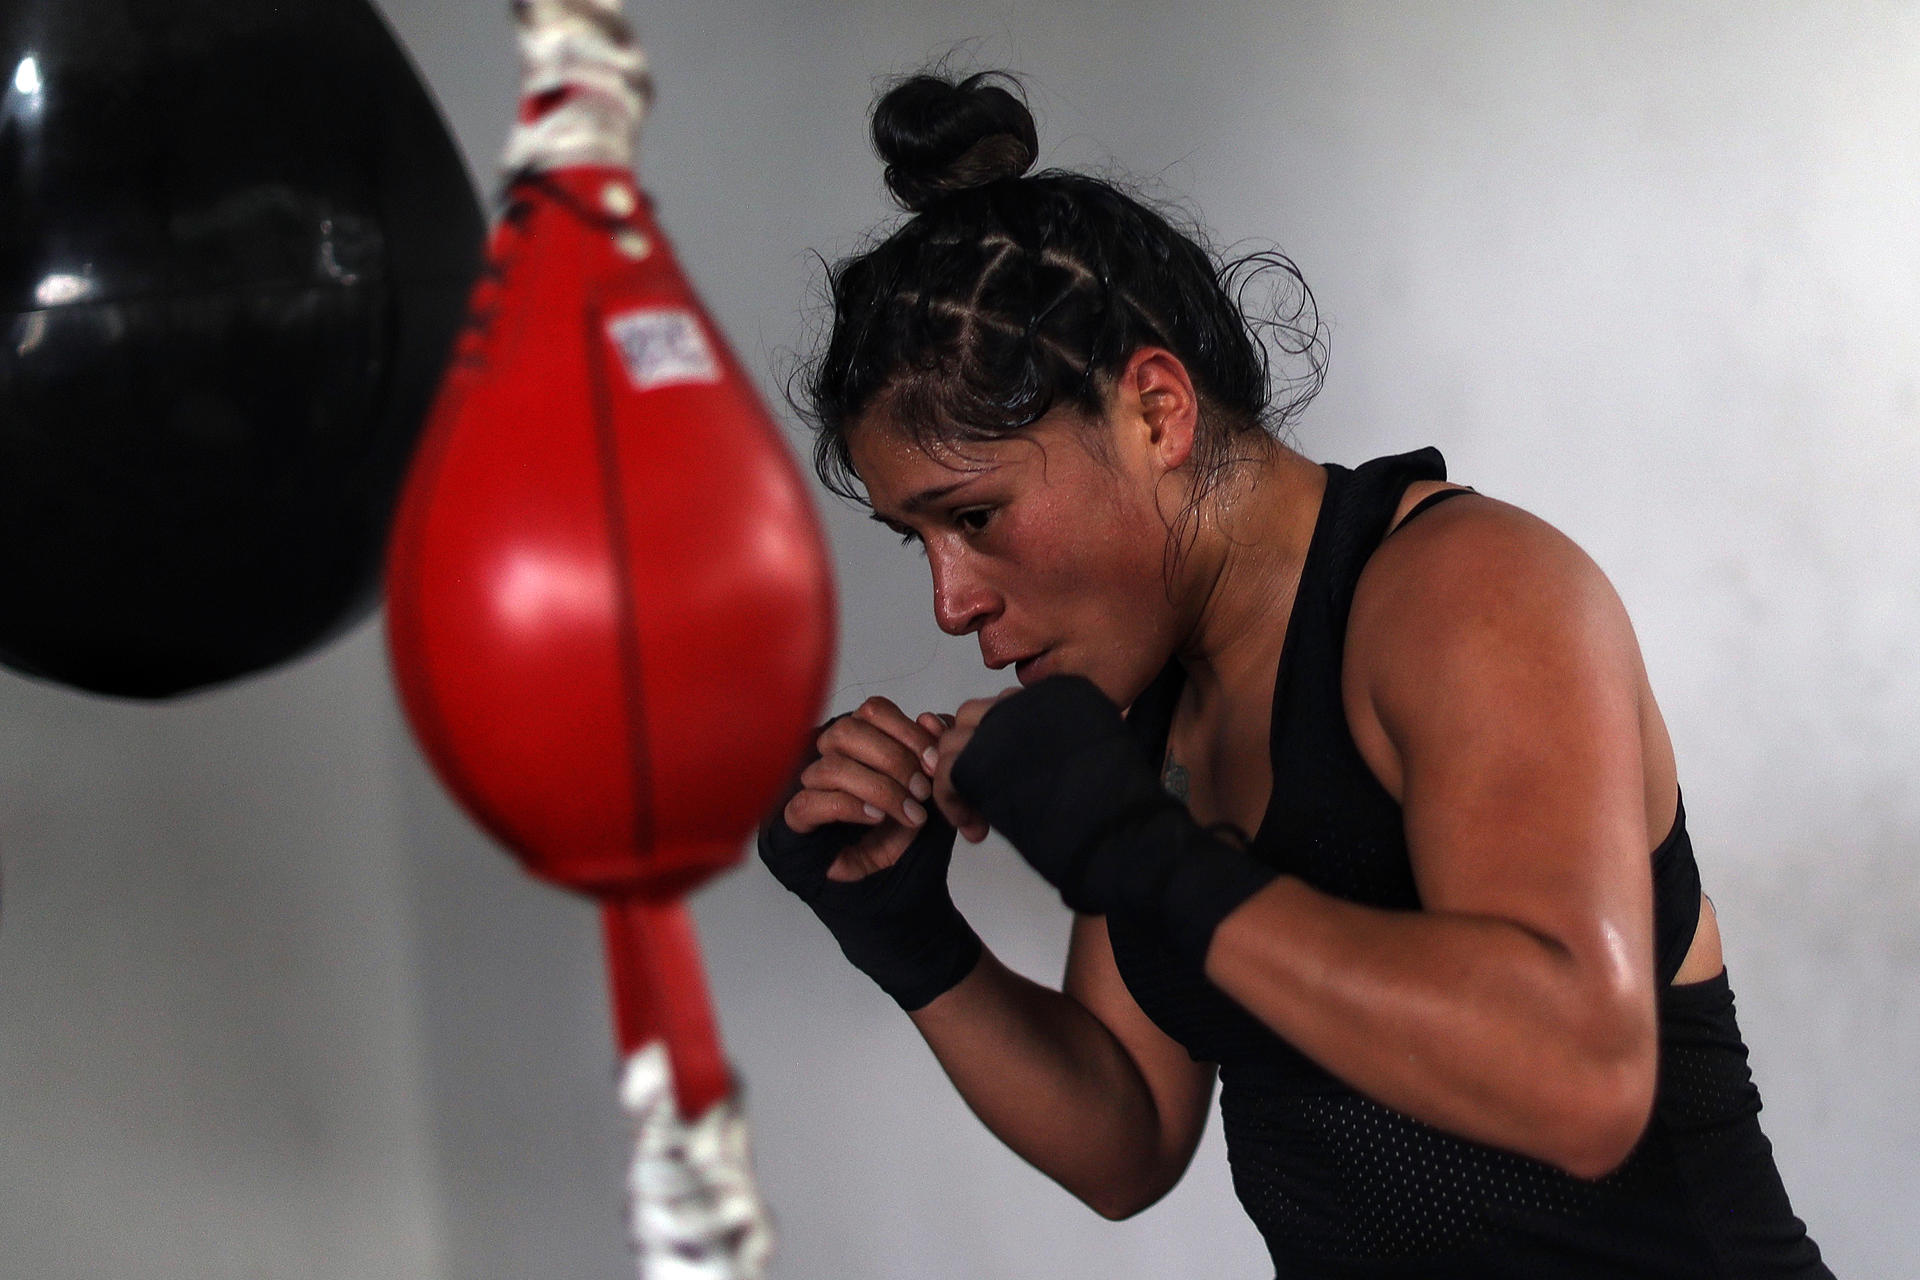 La boxeadora mexicana Erika Cruz durante su entrenamiento previo a su próxima pelea hoy, en Ciudad de México (México). EFE/Sáshenka Gutiérrez
